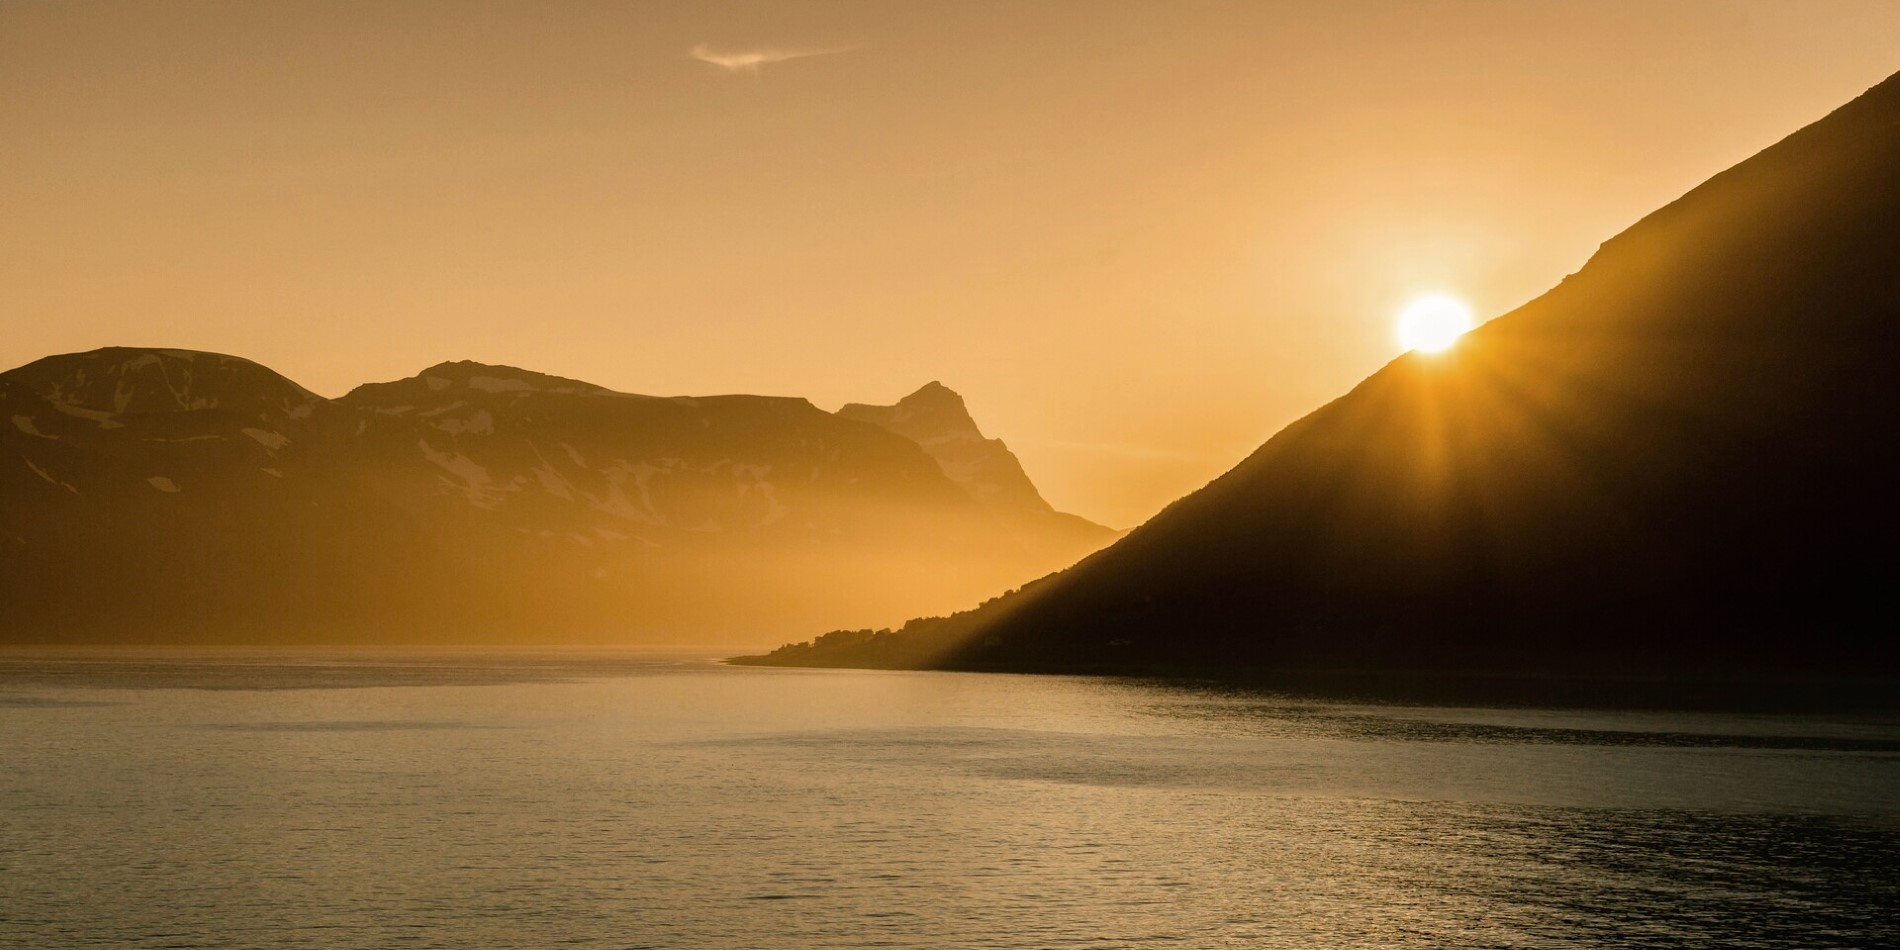 Sunrise over the port of Skjervøy in Norway